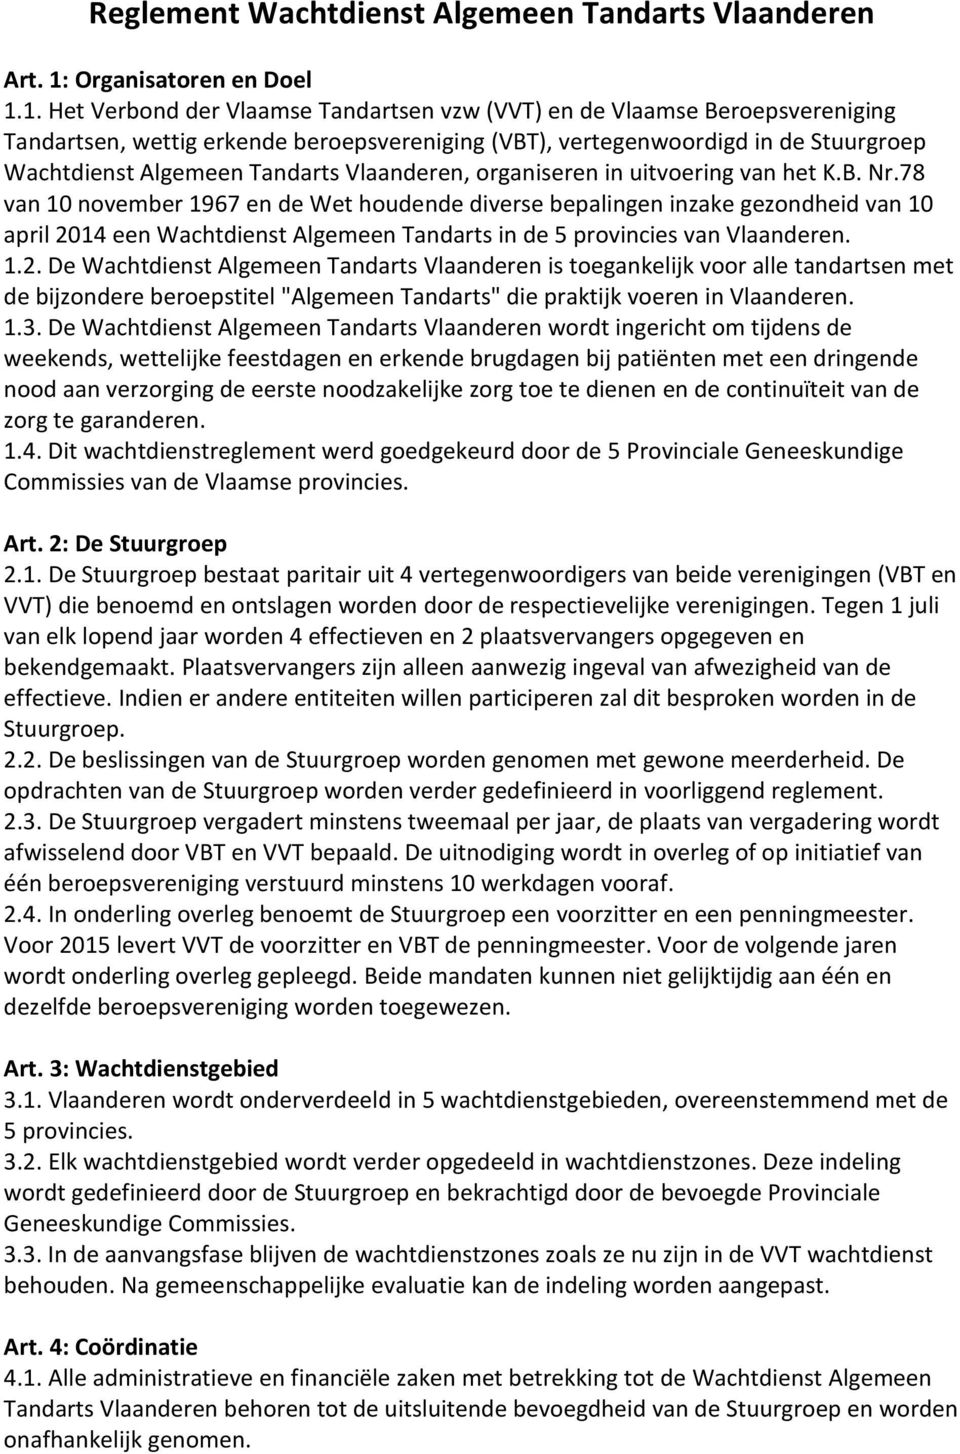 1. Het Verbond der Vlaamse Tandartsen vzw (VVT) en de Vlaamse Beroepsvereniging Tandartsen, wettig erkende beroepsvereniging (VBT), vertegenwoordigd in de Stuurgroep Wachtdienst Algemeen Tandarts